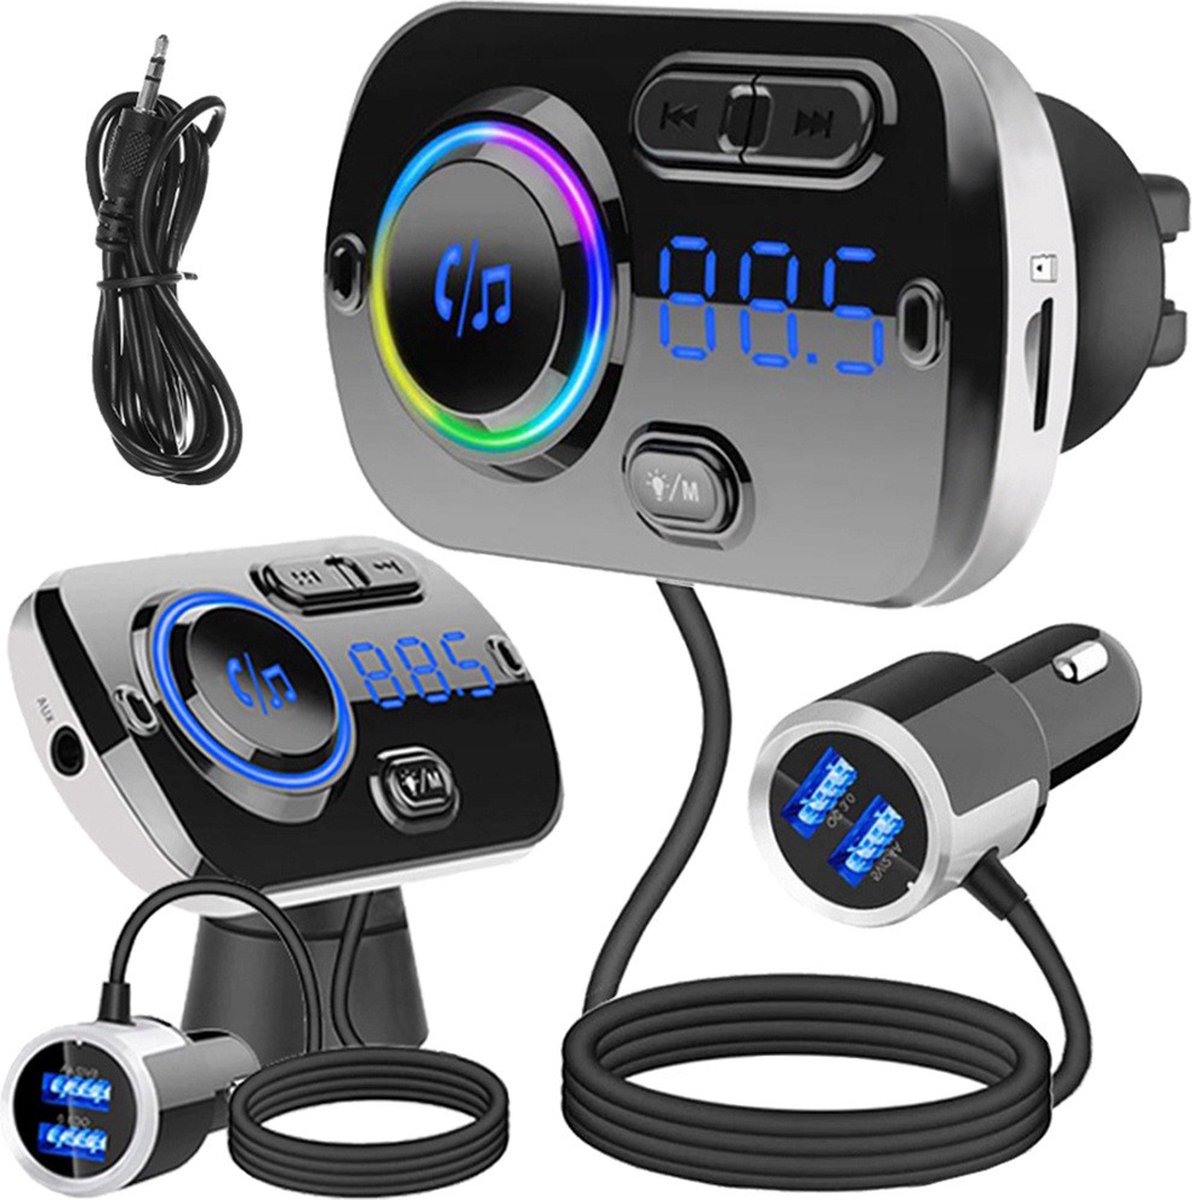 Snelle autolader met Bluetooth, FM-radio en handsfree bellen -USB 5